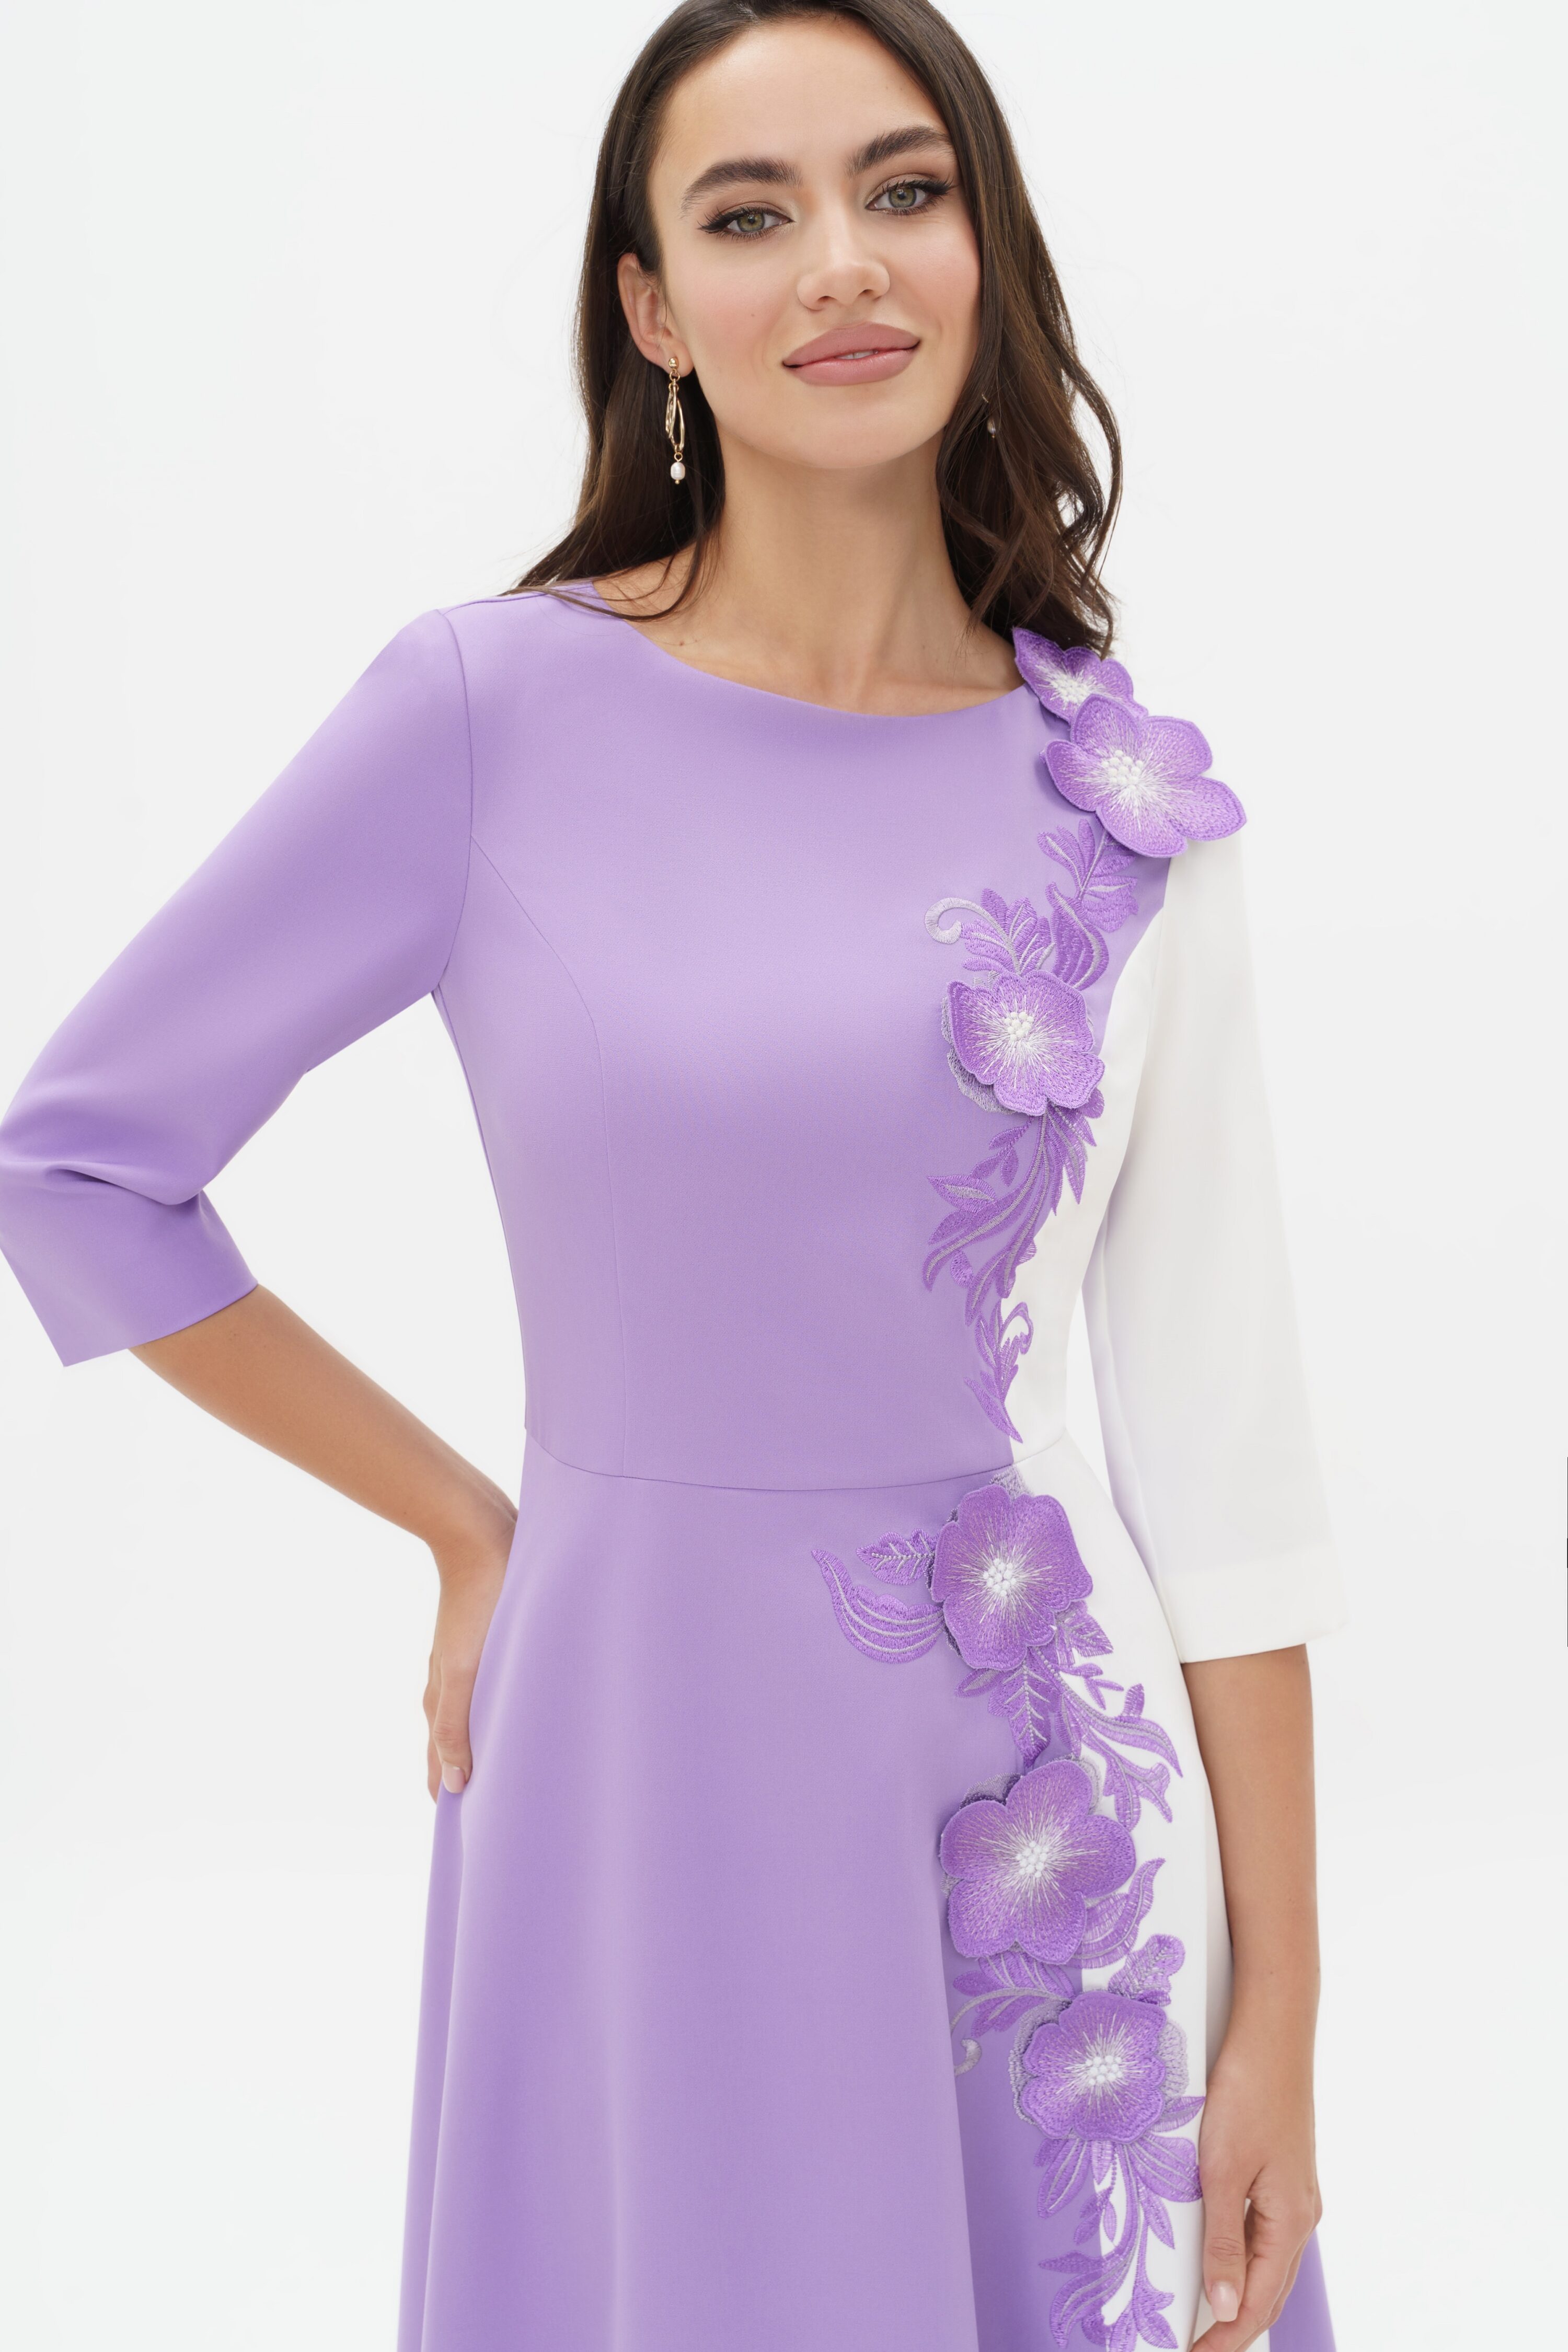 Купить платье URS 24-310-3 сиреневое женское с вышивкой